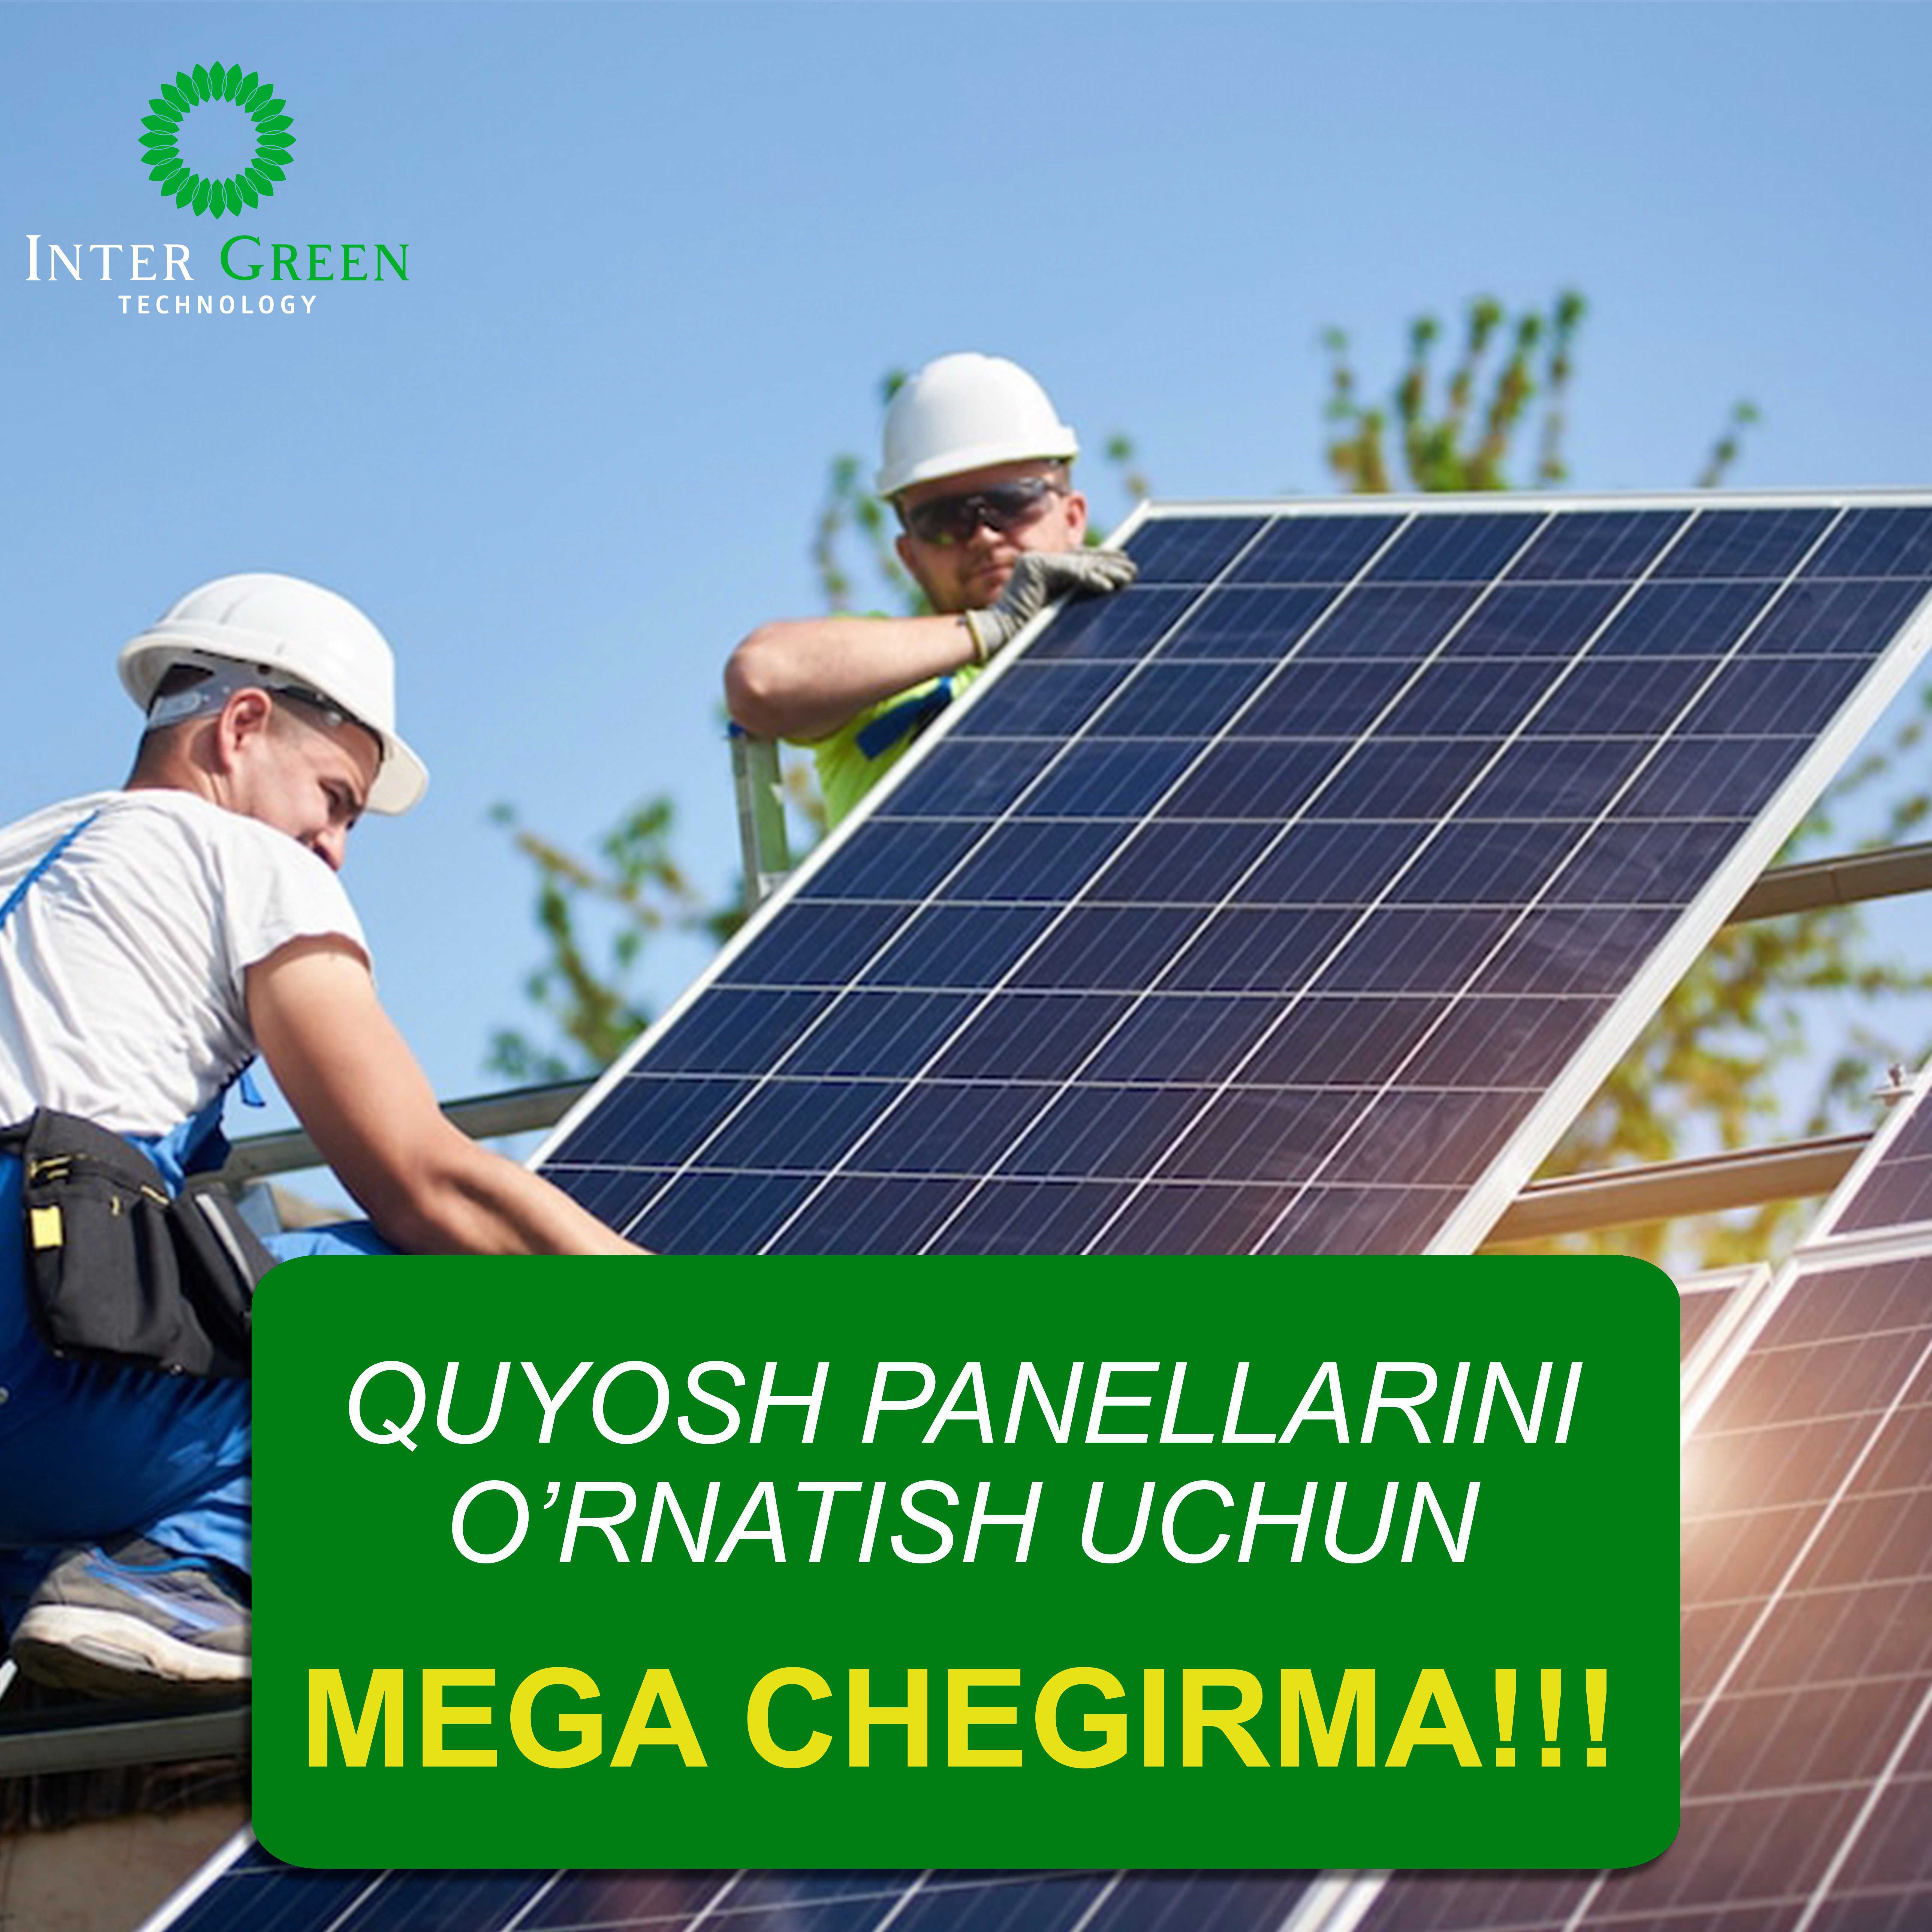 Quyosh panellari o'rnatish uchun MEGA CHEGIRMA солнечный панель